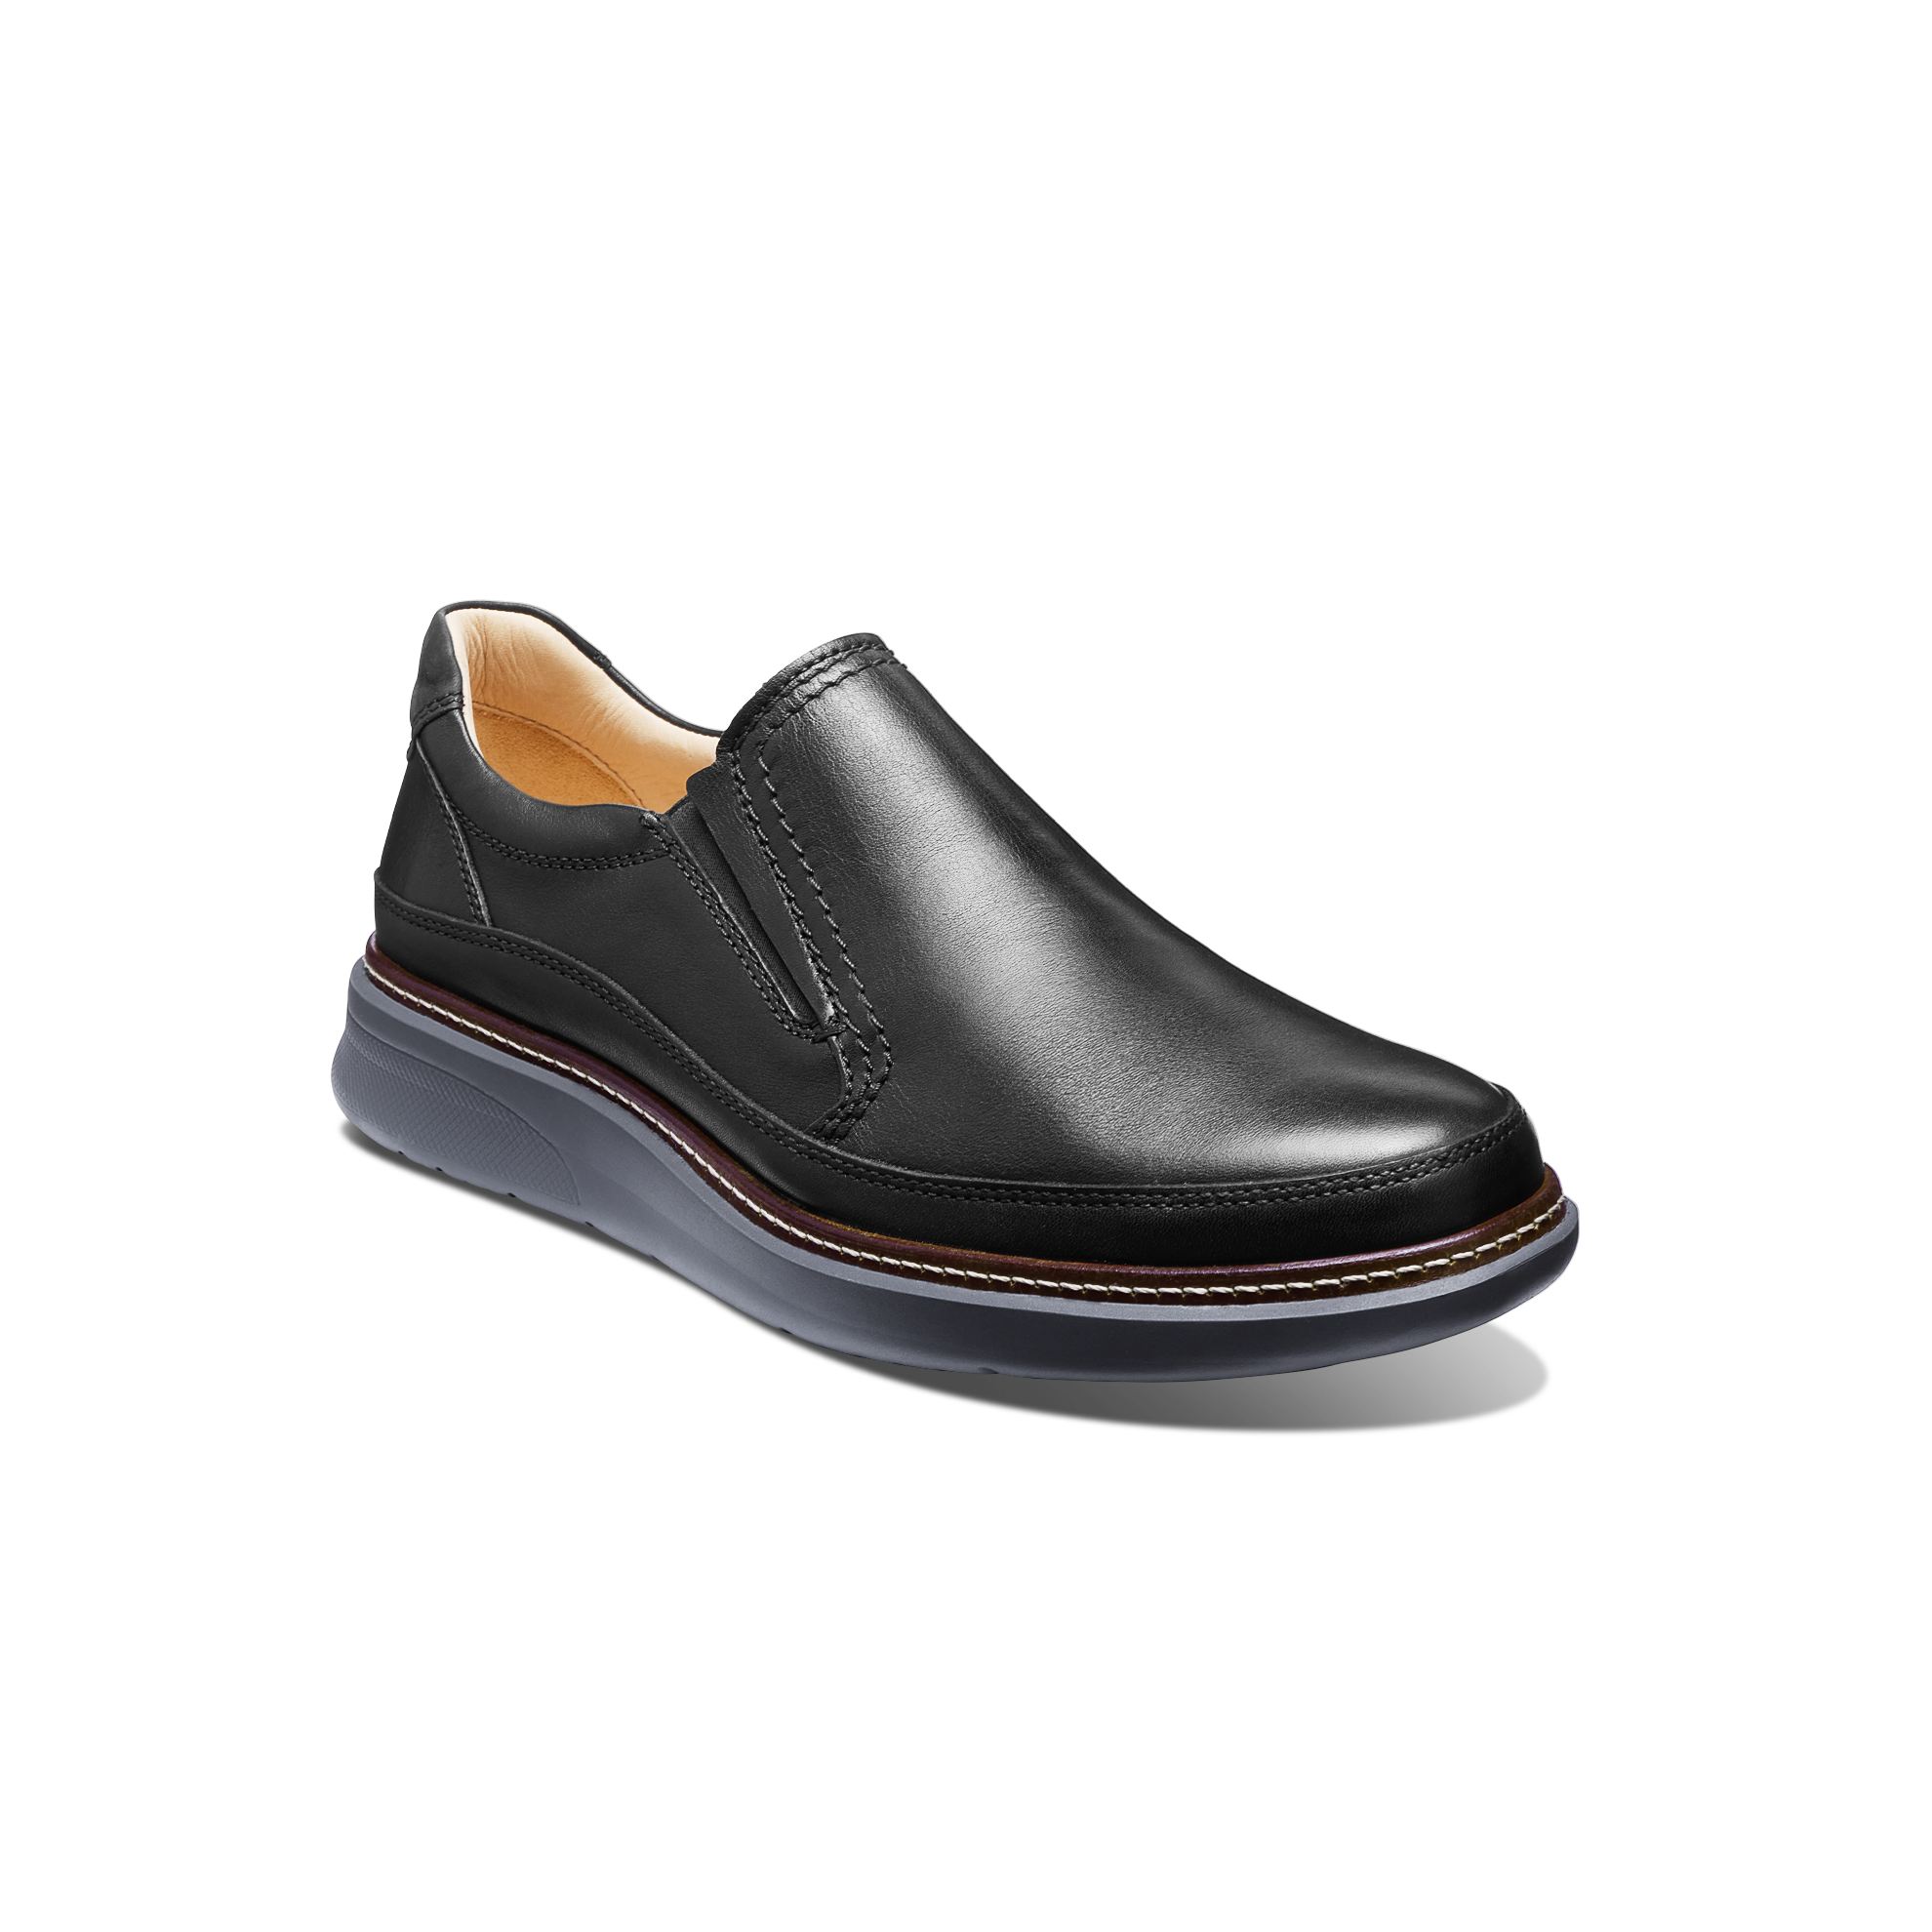 Leather Slip On Shoes For Men Online | bellvalefarms.com